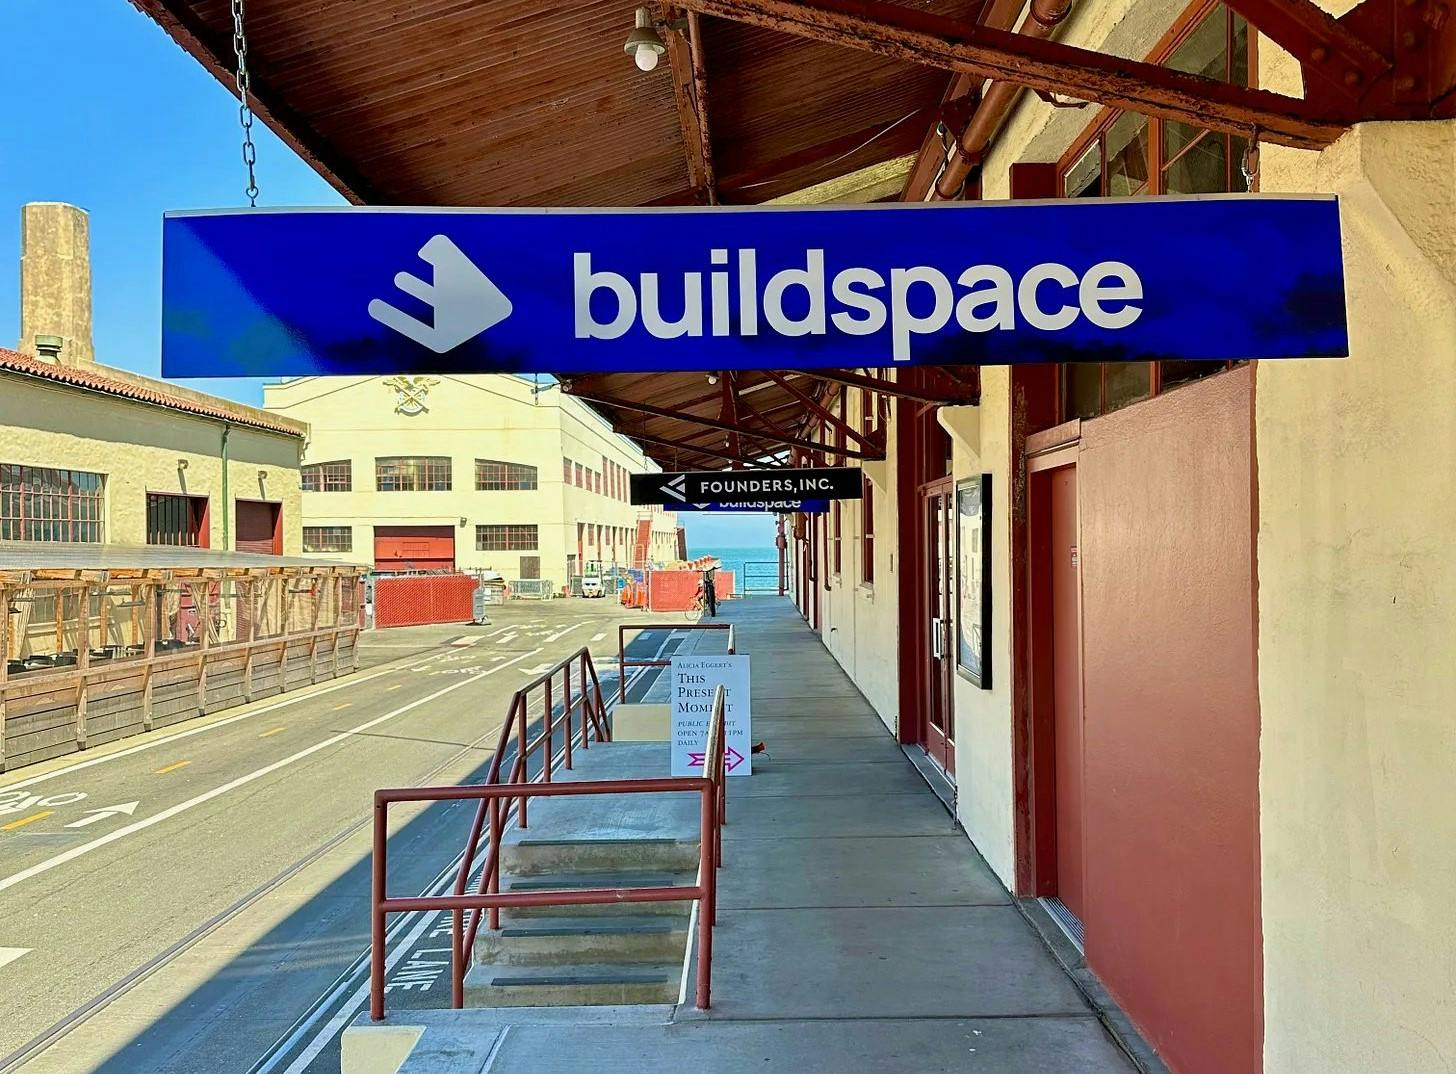 Buildspace School in San Francisco